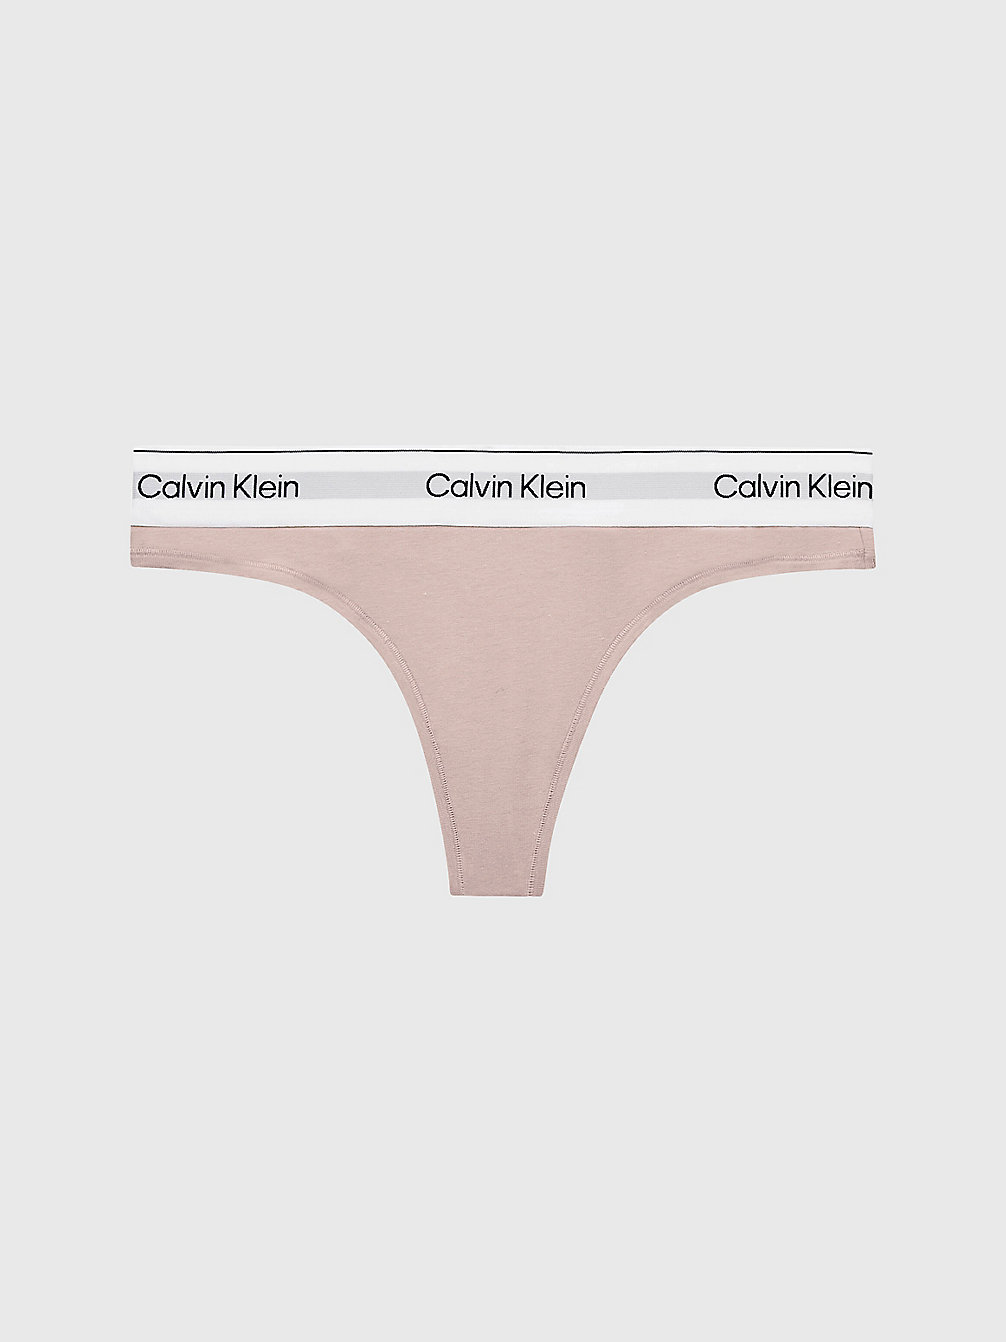 CEDAR String – Modern Cotton undefined Damen Calvin Klein